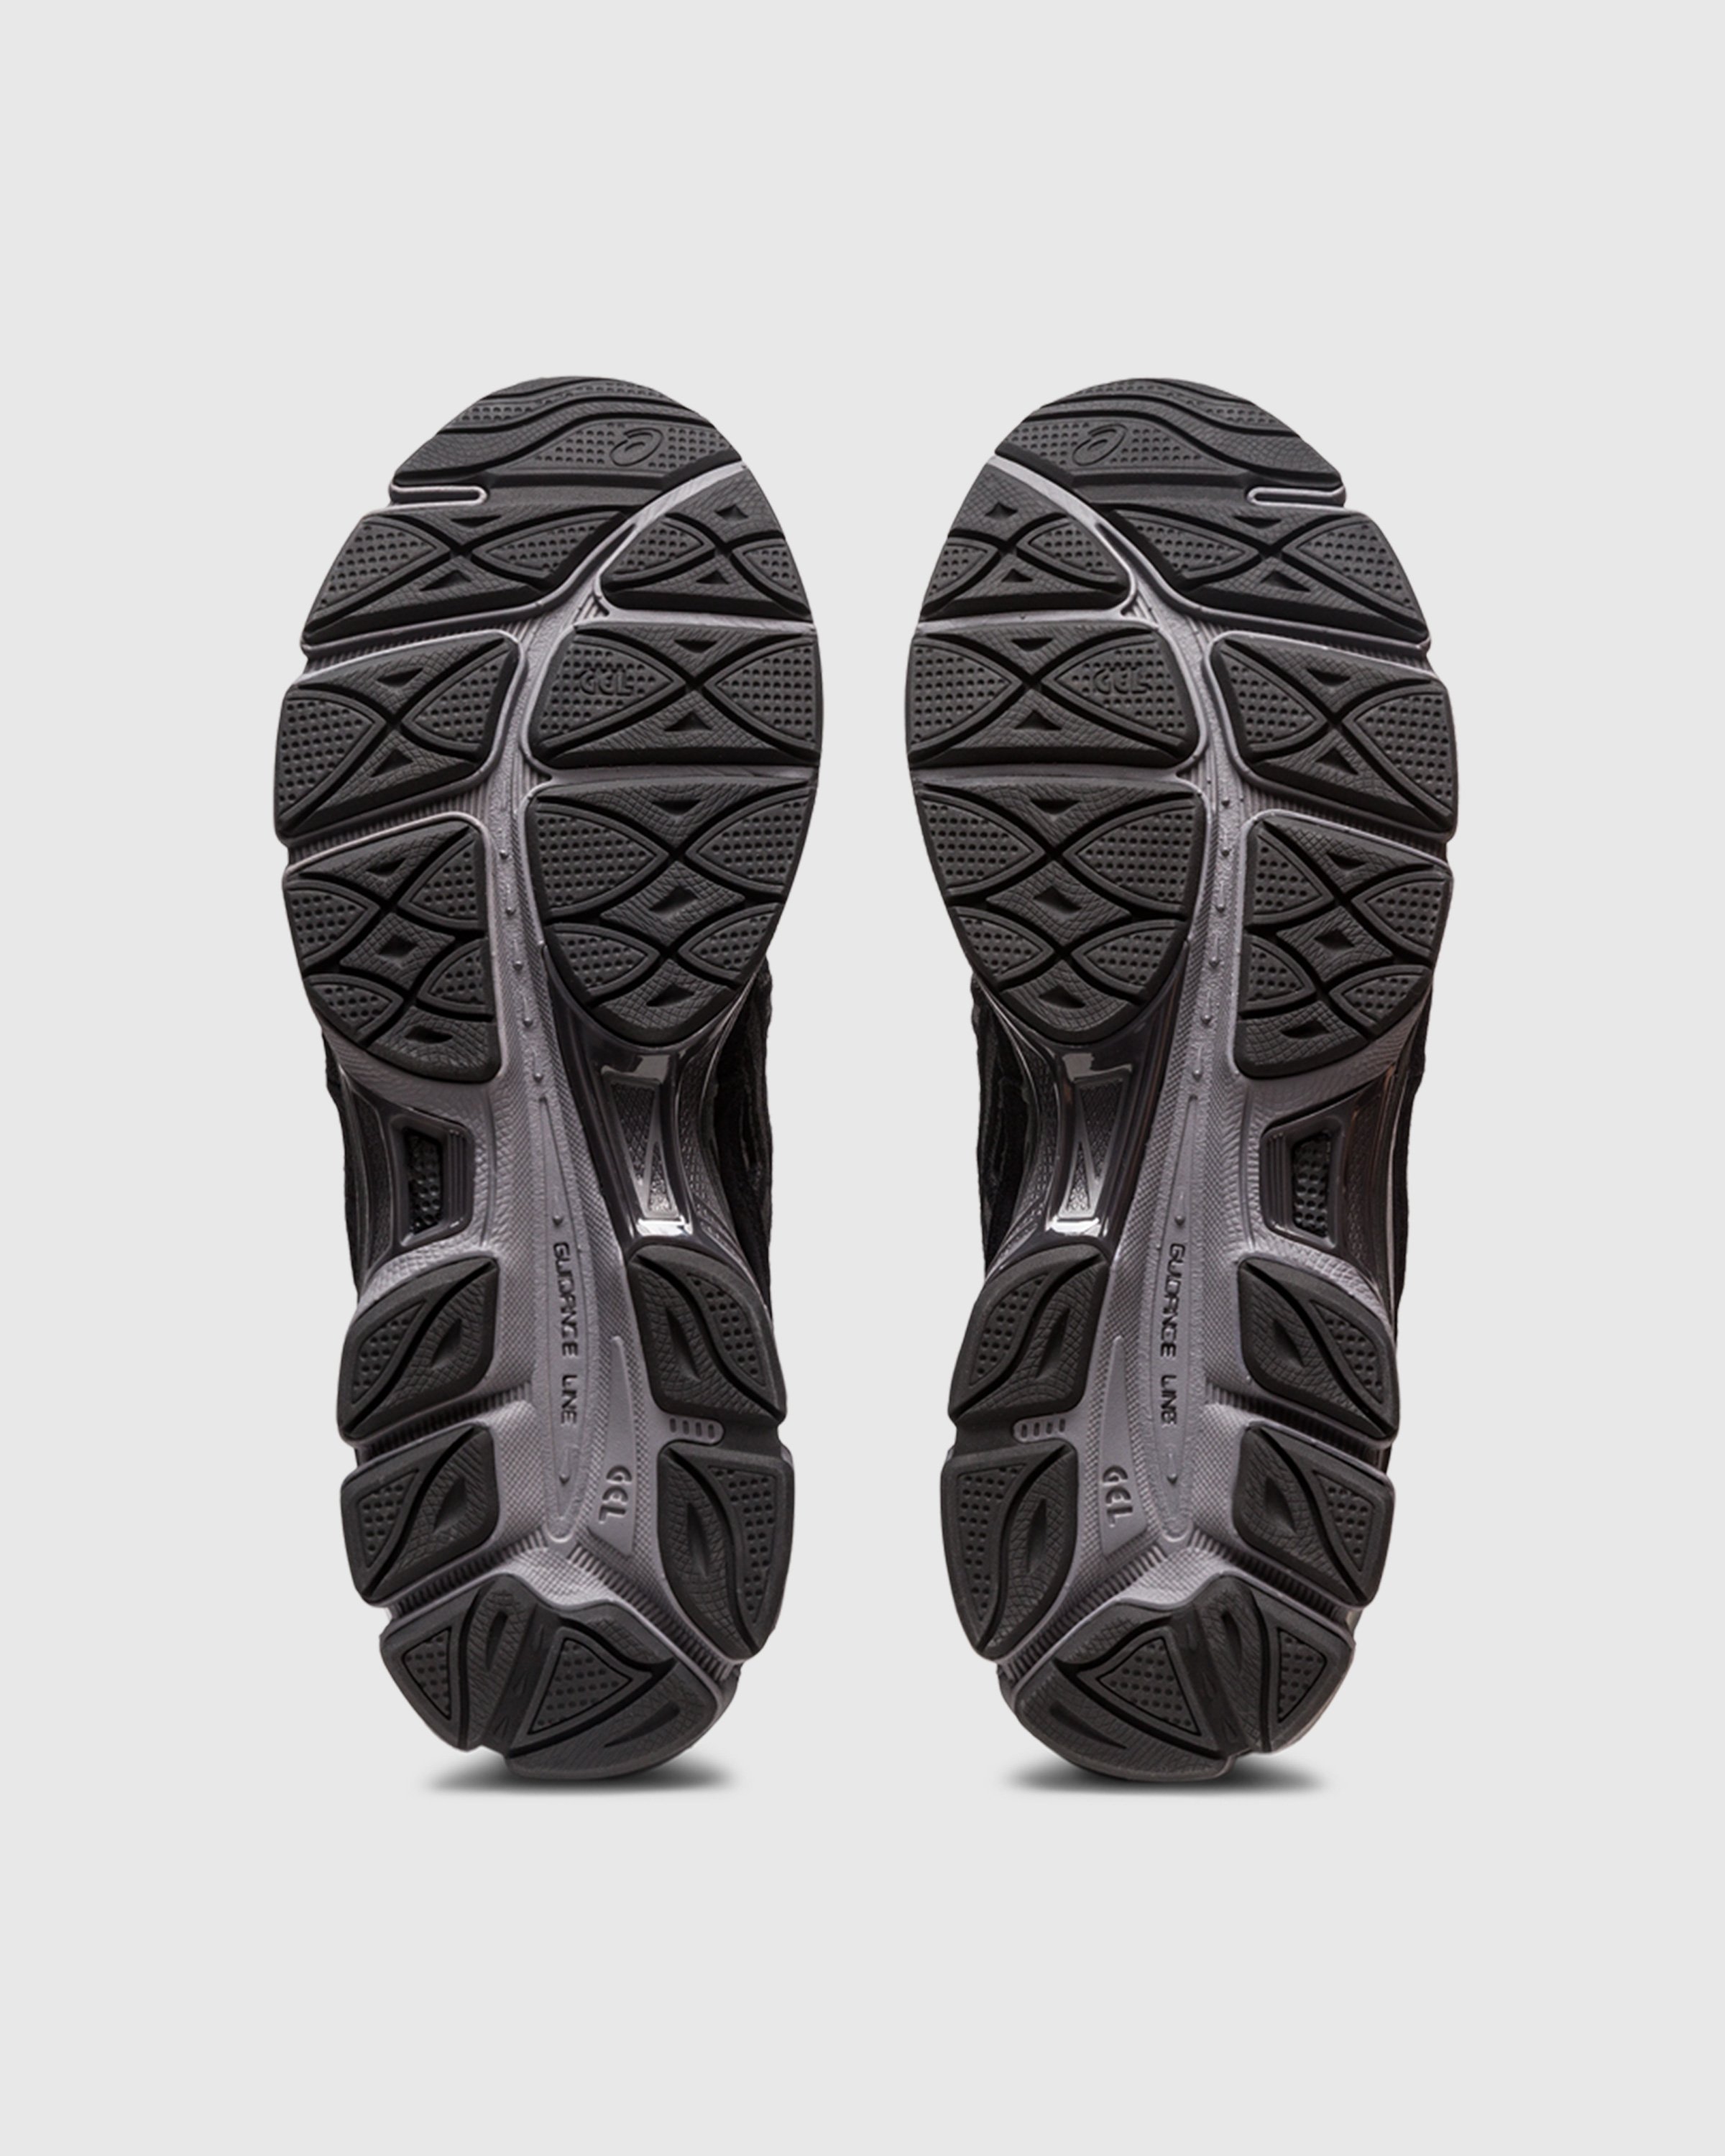 asics - GEL-NYC Graphite Grey/Black - Footwear - Black - Image 6